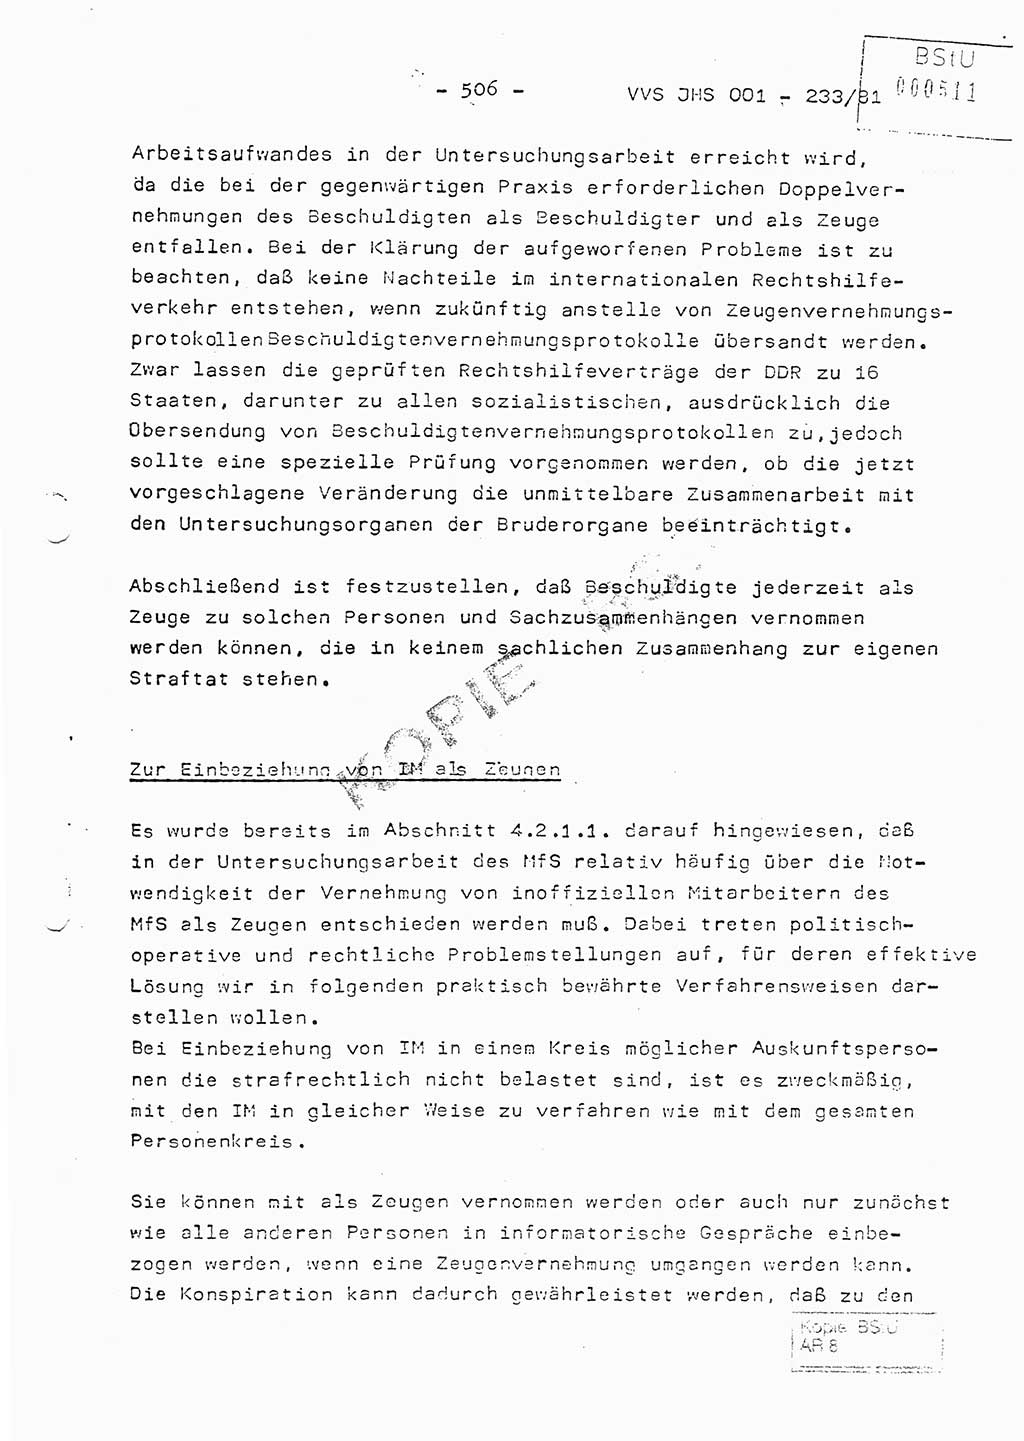 Dissertation Oberstleutnant Horst Zank (JHS), Oberstleutnant Dr. Karl-Heinz Knoblauch (JHS), Oberstleutnant Gustav-Adolf Kowalewski (HA Ⅸ), Oberstleutnant Wolfgang Plötner (HA Ⅸ), Ministerium für Staatssicherheit (MfS) [Deutsche Demokratische Republik (DDR)], Juristische Hochschule (JHS), Vertrauliche Verschlußsache (VVS) o001-233/81, Potsdam 1981, Blatt 506 (Diss. MfS DDR JHS VVS o001-233/81 1981, Bl. 506)